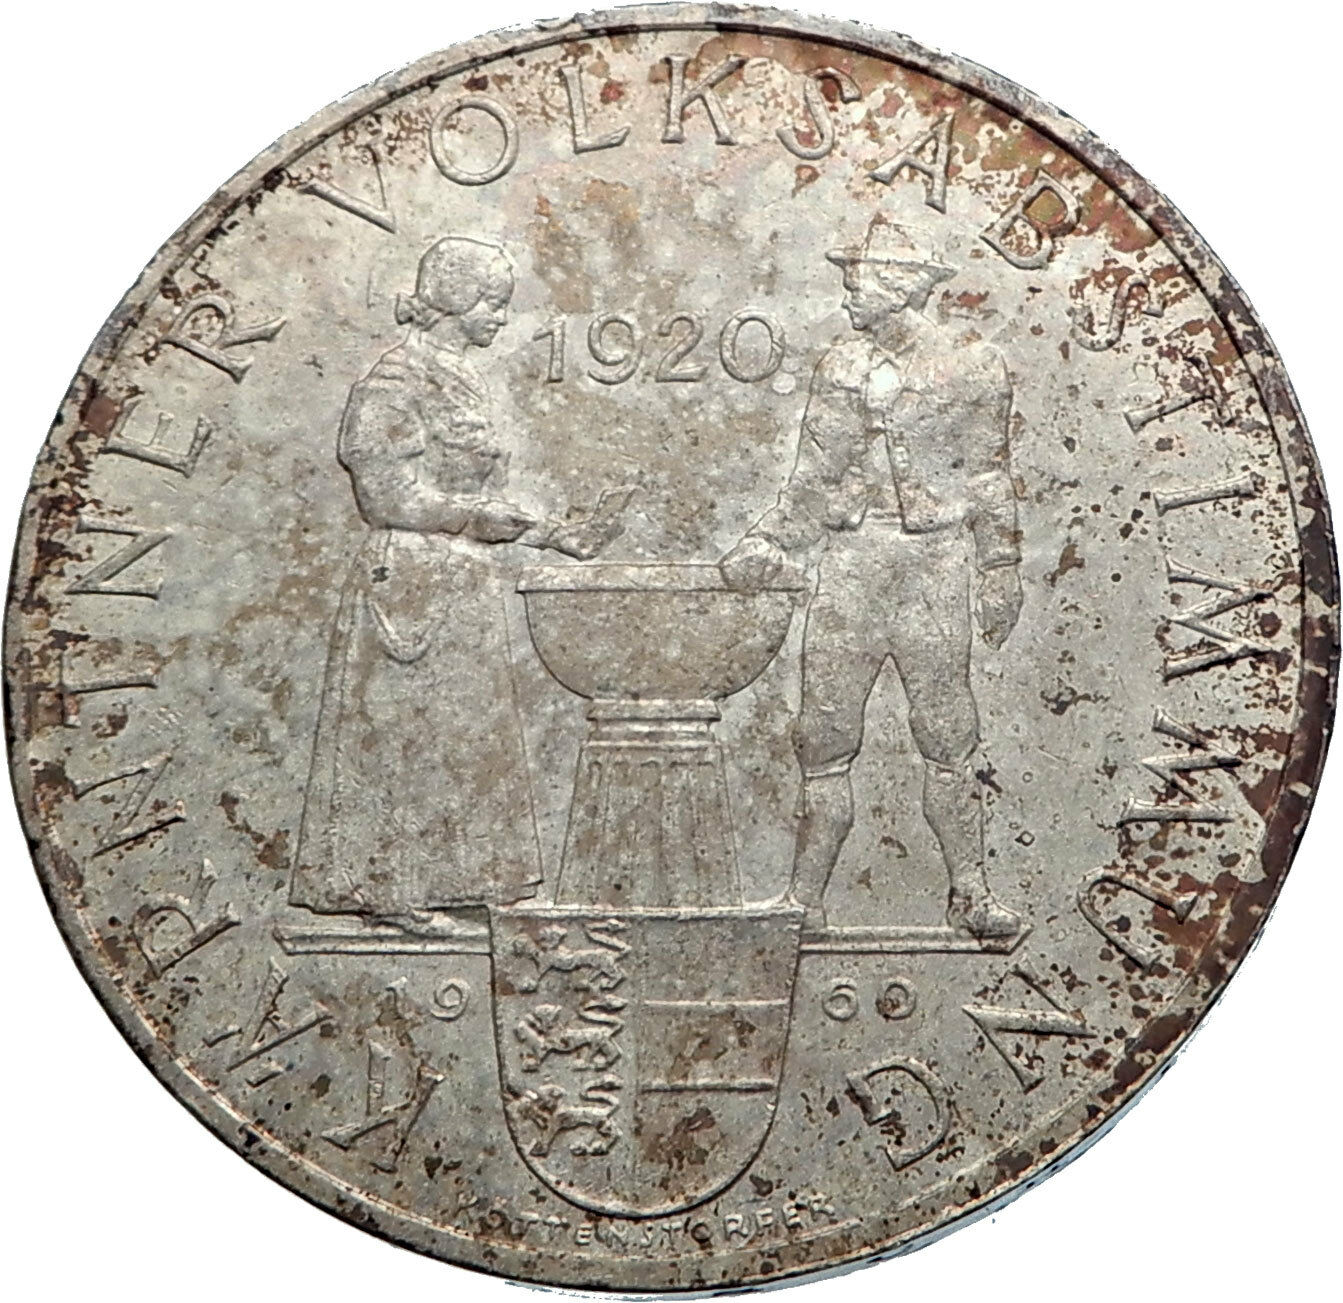 1960 AUSTRIA Carinthian Plebiscite 40th Antique Silver 25 Schilling Coin i72037